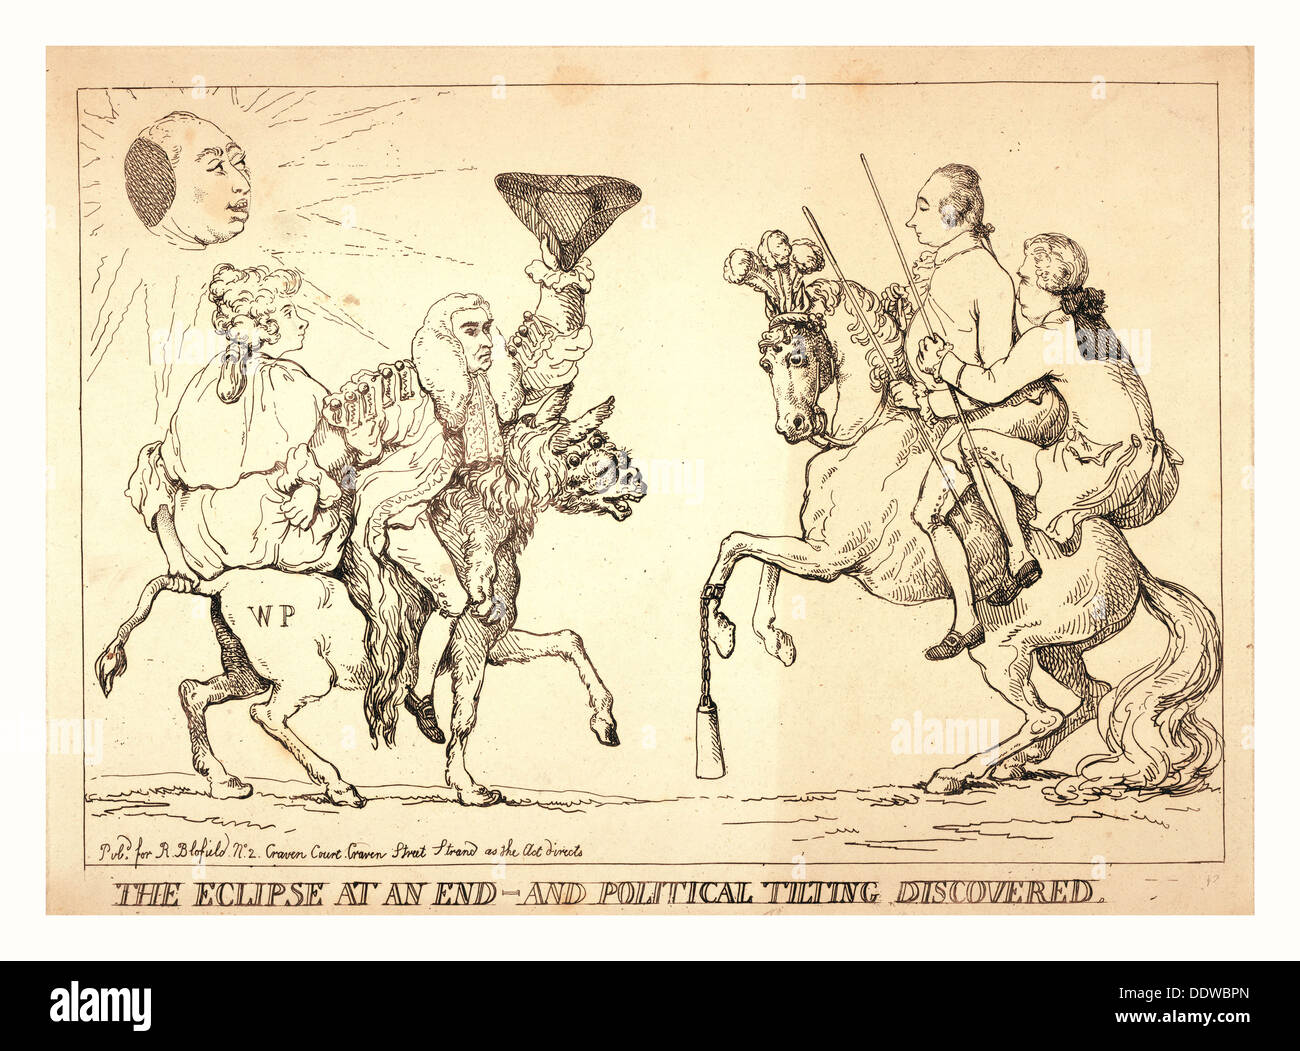 L'eclipse in corrispondenza di una estremità - e inclinazione politico scoperto, London, 1789?, Edward Thurlow e di una donna, eventualmente Queen Charlotte Foto Stock